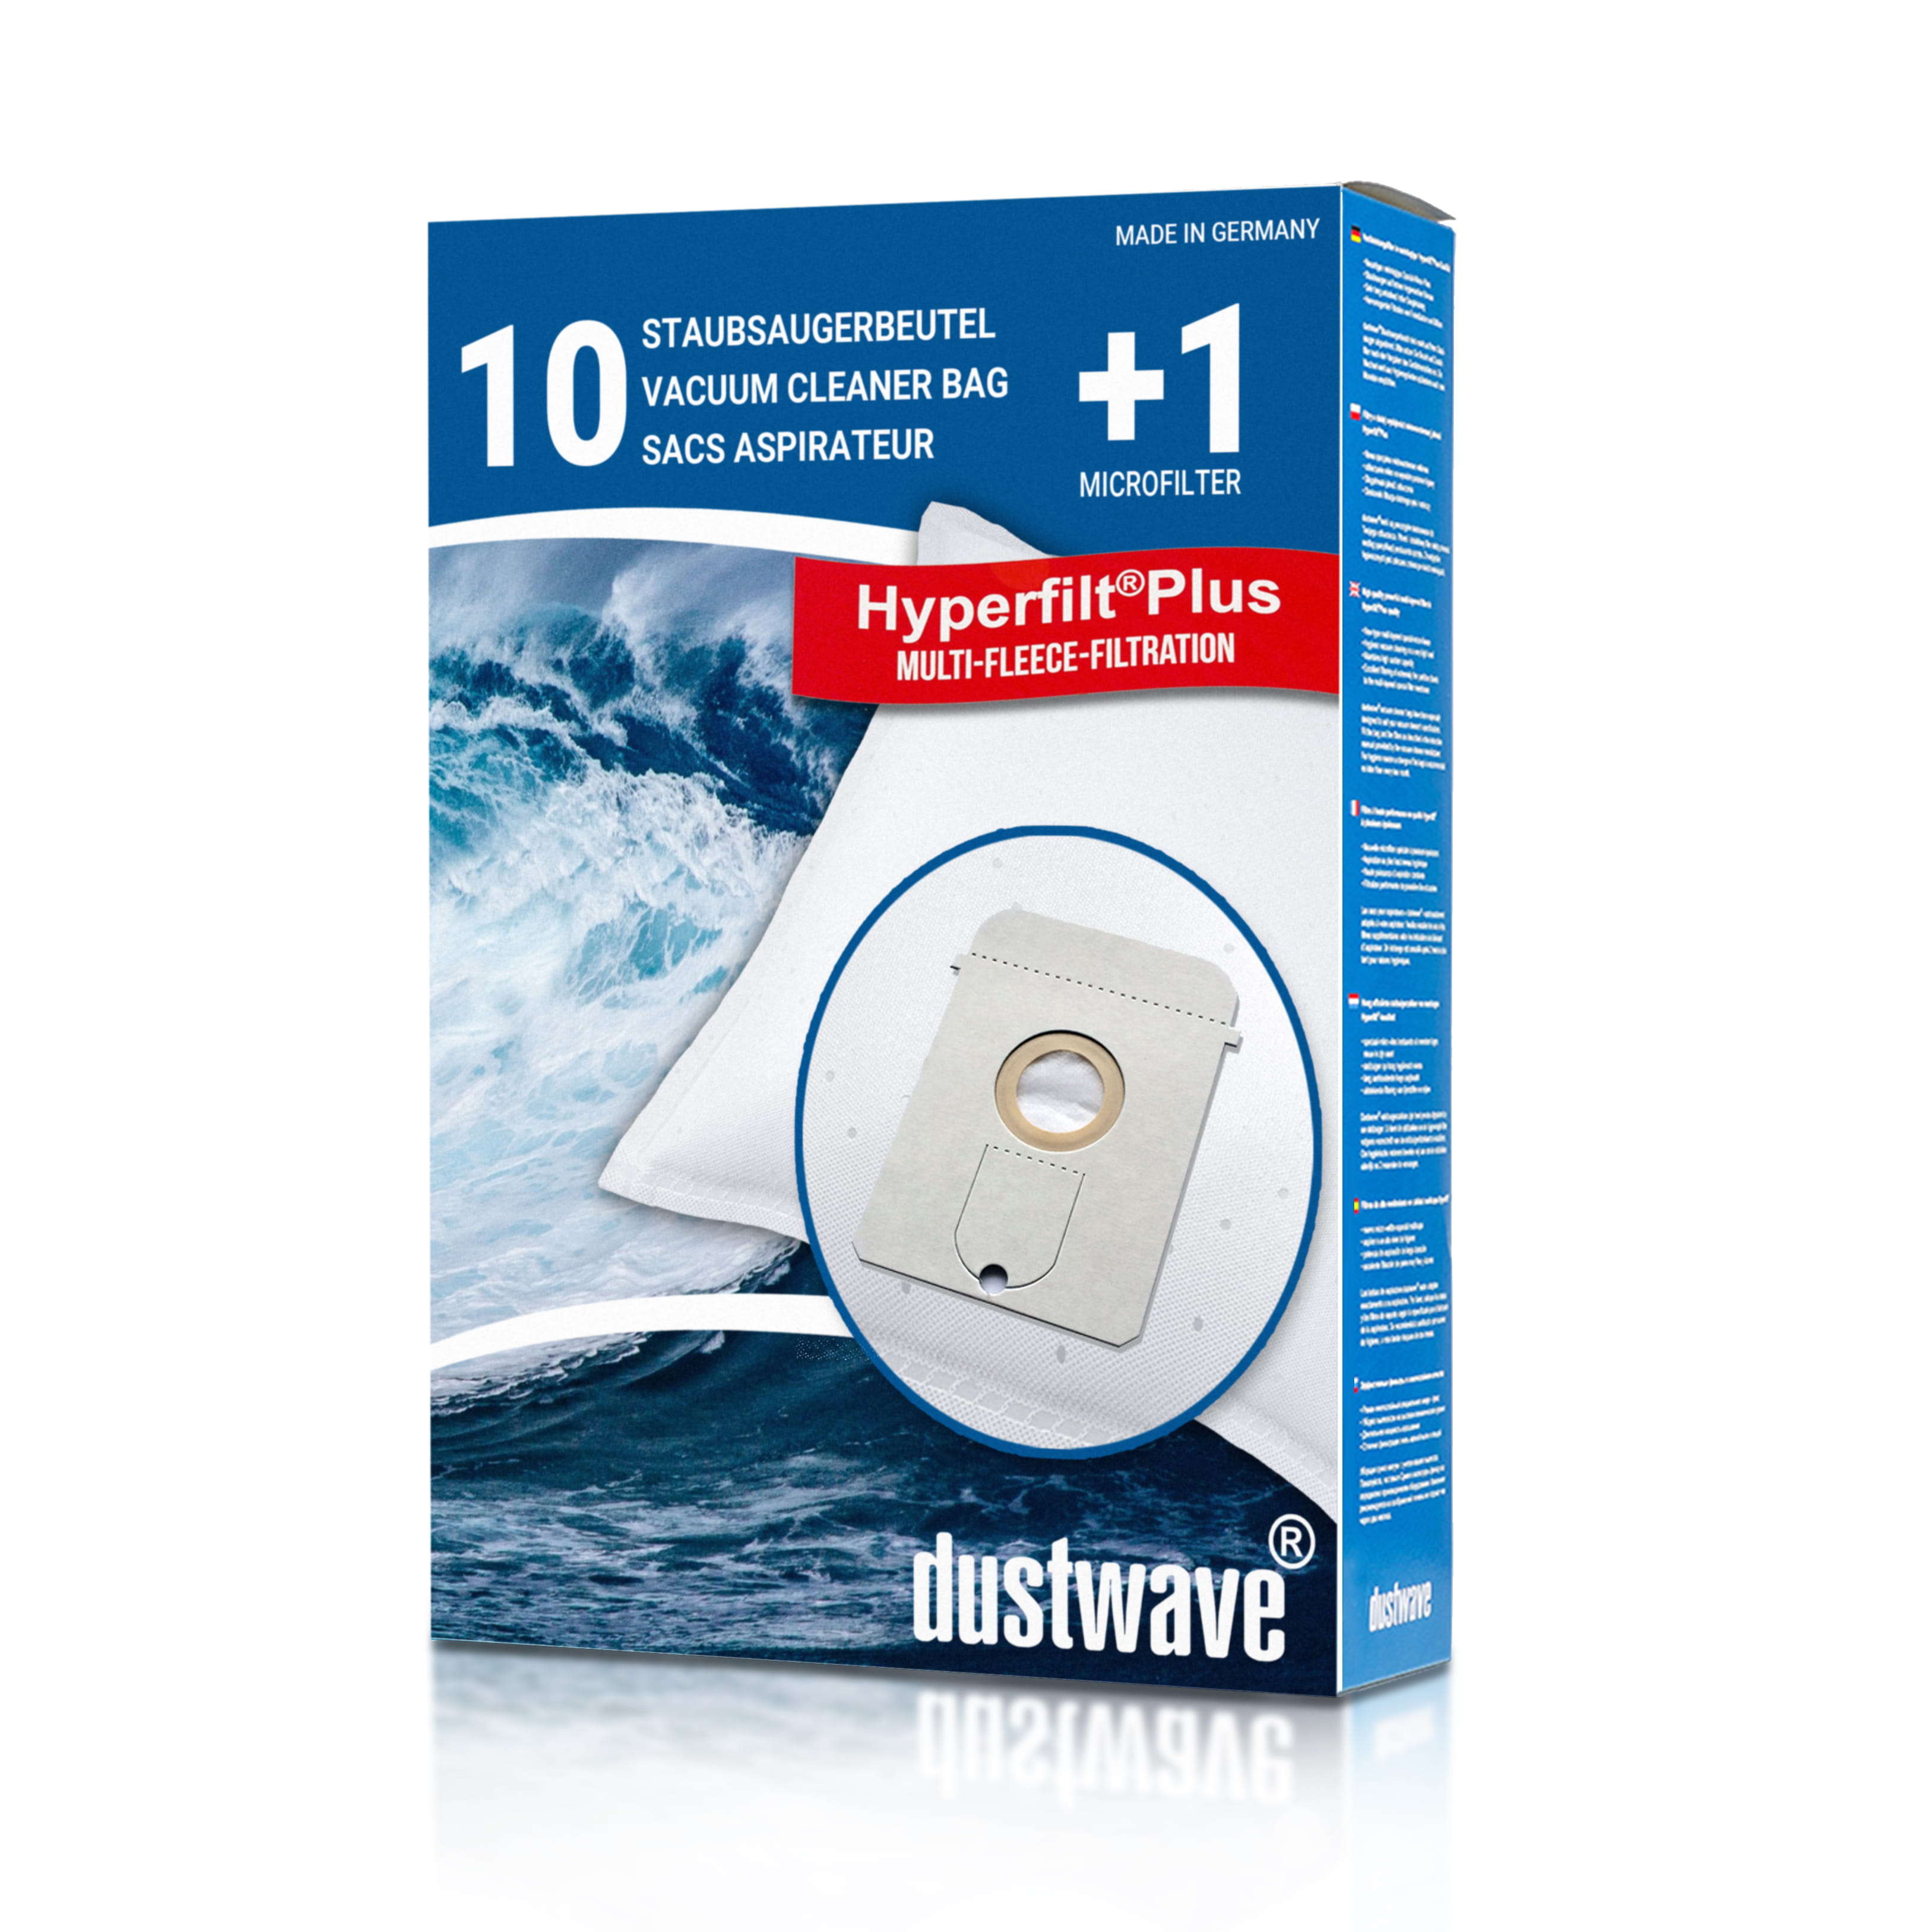 Dustwave® 10 Staubsaugerbeutel für AEG GR22 / Größe 22 - hocheffizient mit Hygieneverschluss - Made in Germany